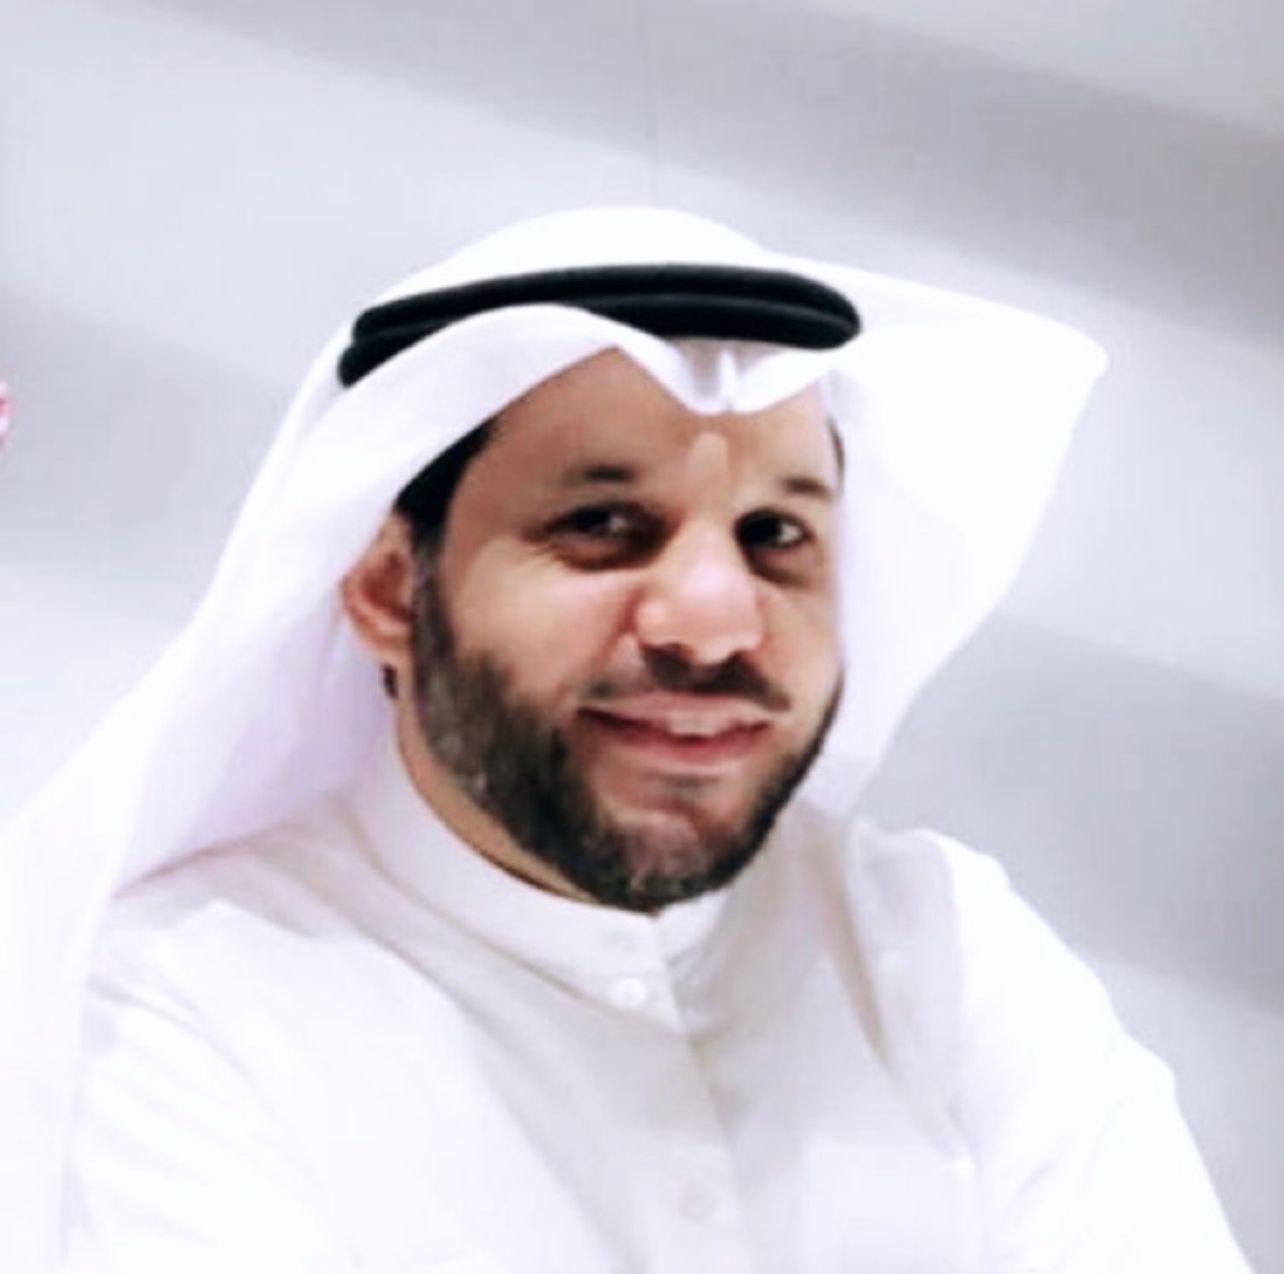 الكاتب الكويتي حسين مهلهل الياسين شخصية "مؤثر إيجابي" لهذا الأسبوع